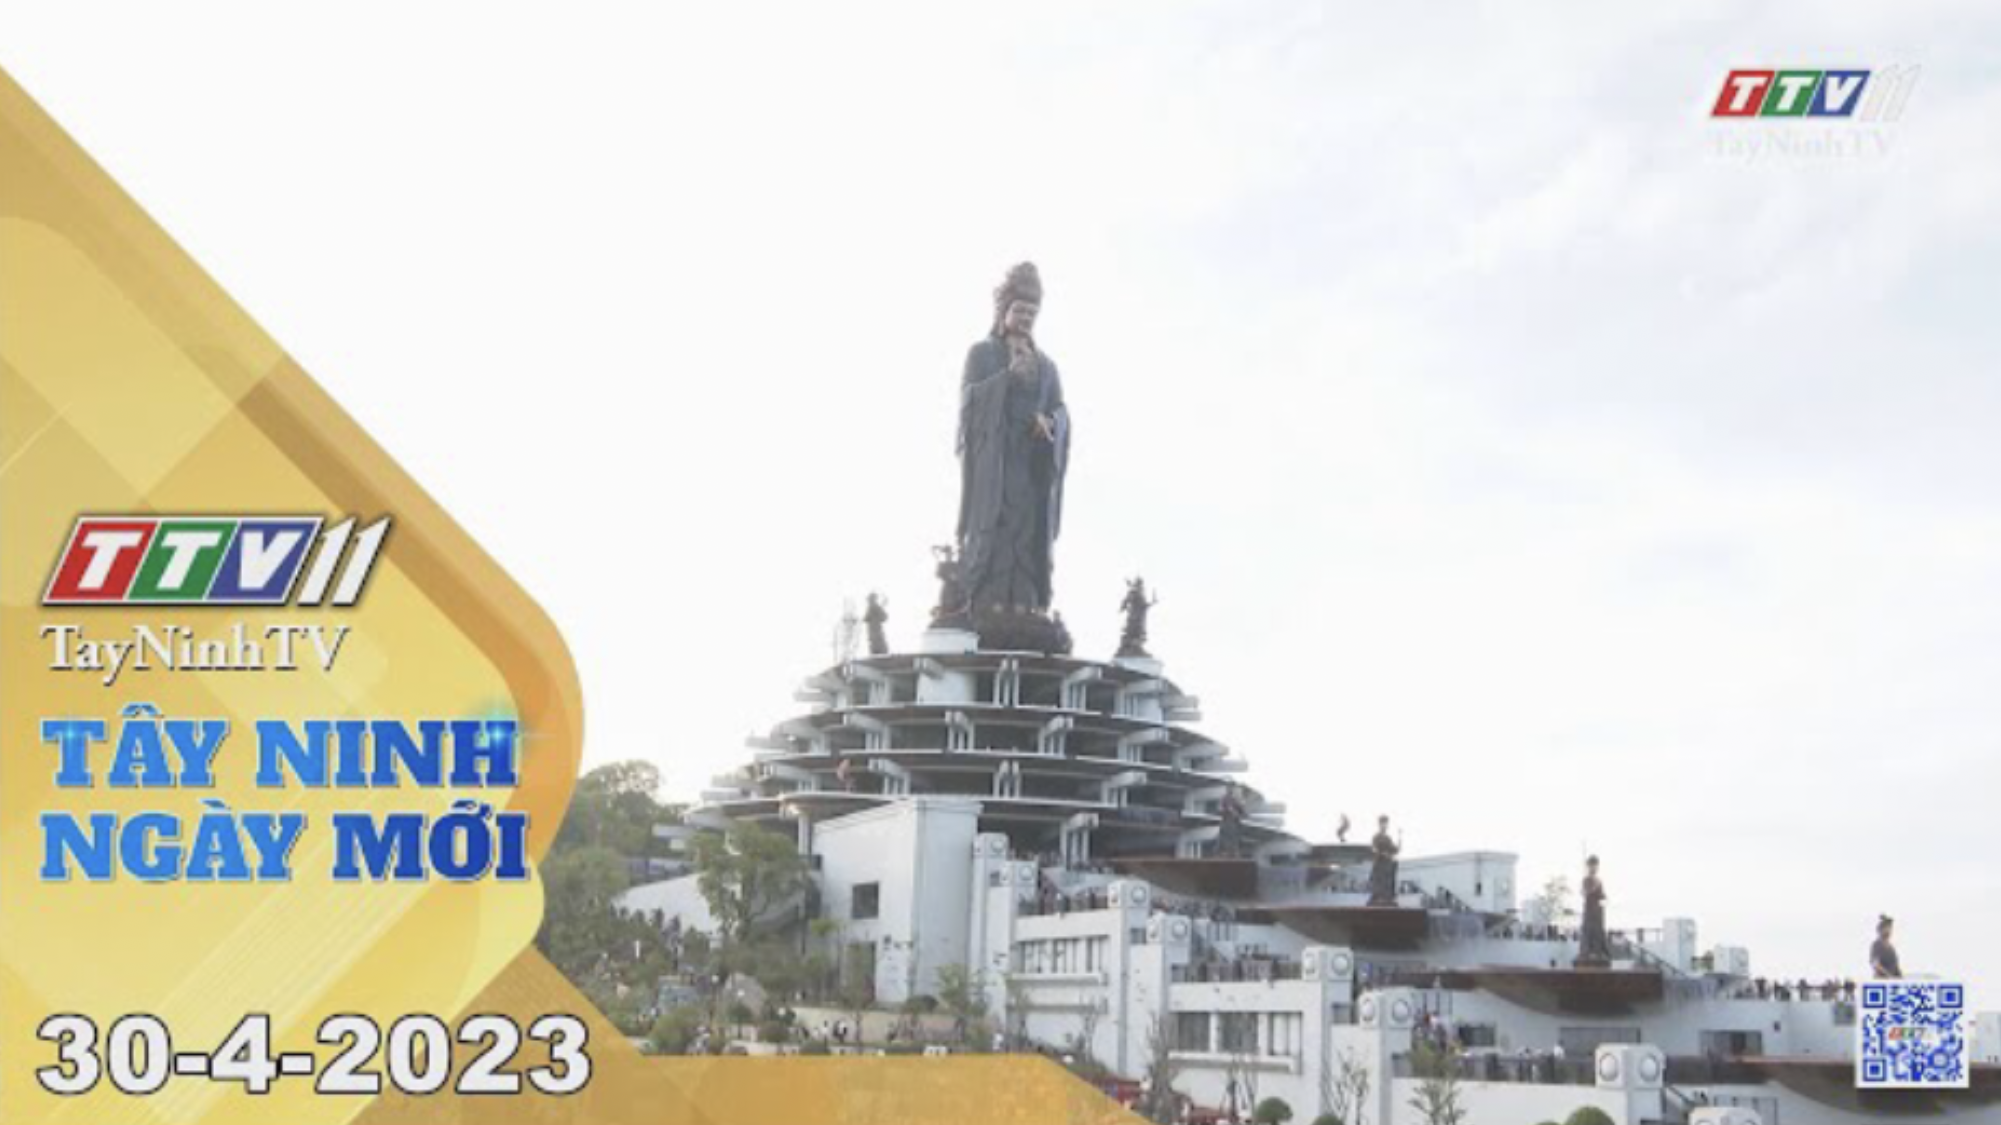 Tây Ninh ngày mới 30-4-2023 | Tin tức hôm nay | TayNinhTV